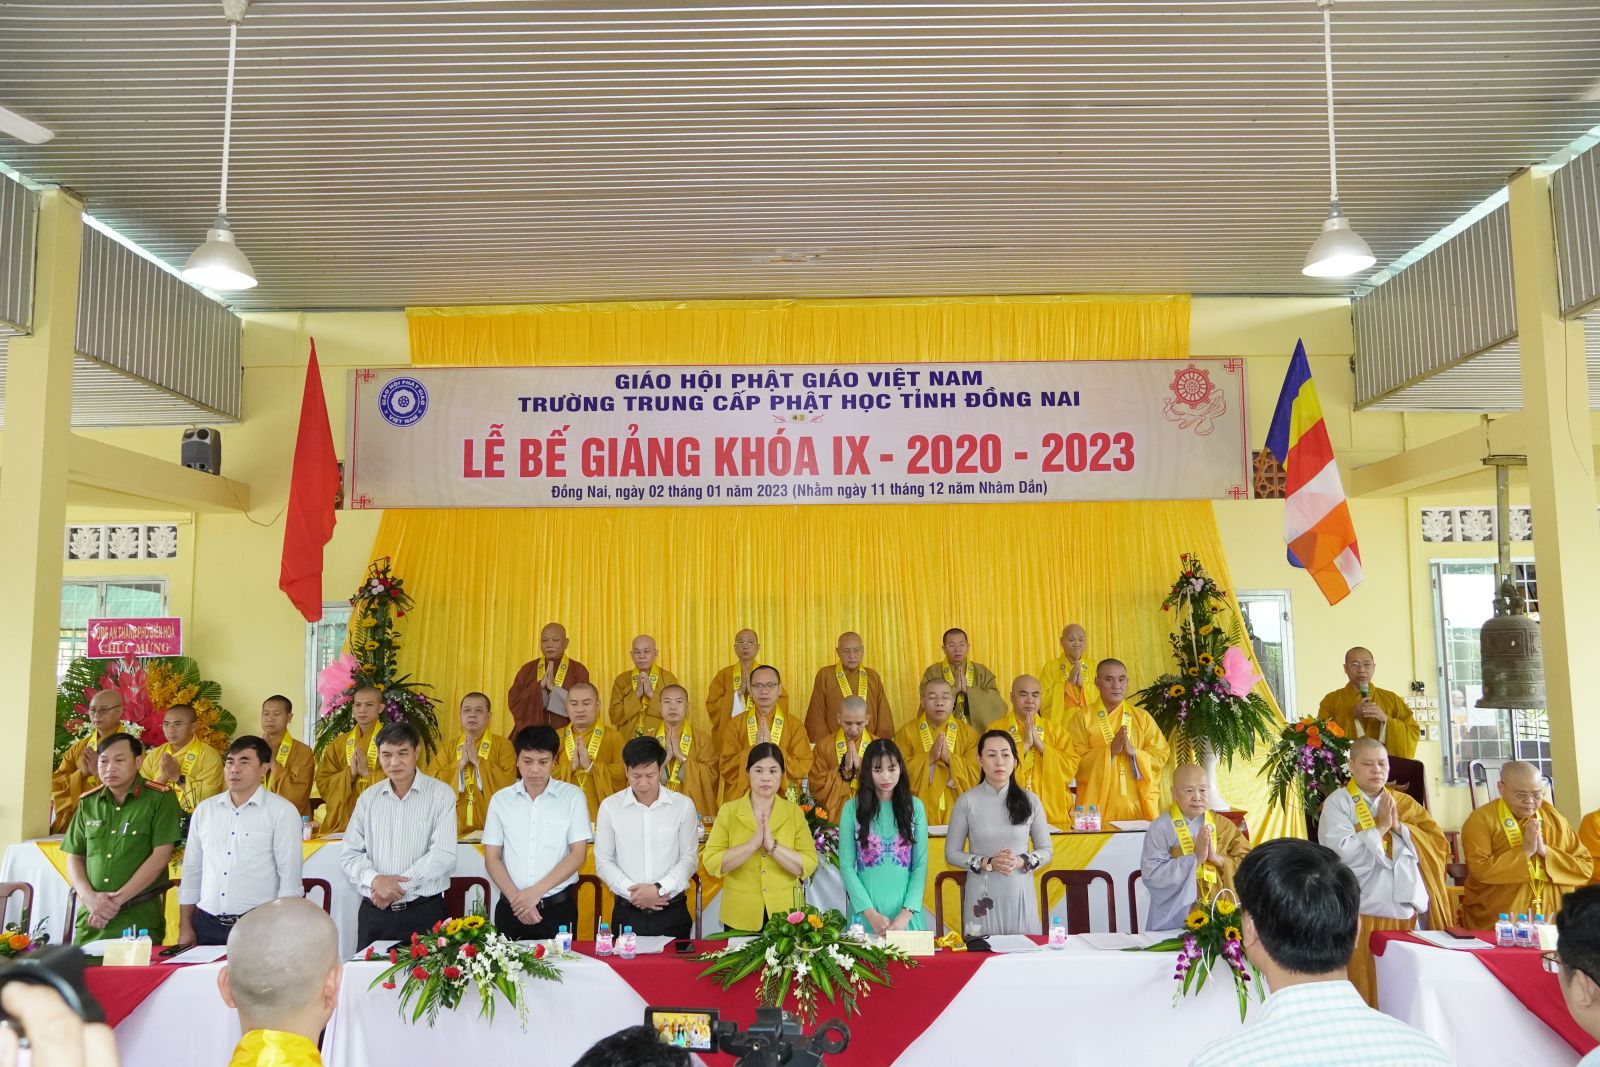 Đồng Nai: Trường Trung cấp Phật học tỉnh Đồng Nai – tổ chức lễ Bế giảng khóa IX 2020 – 2023.